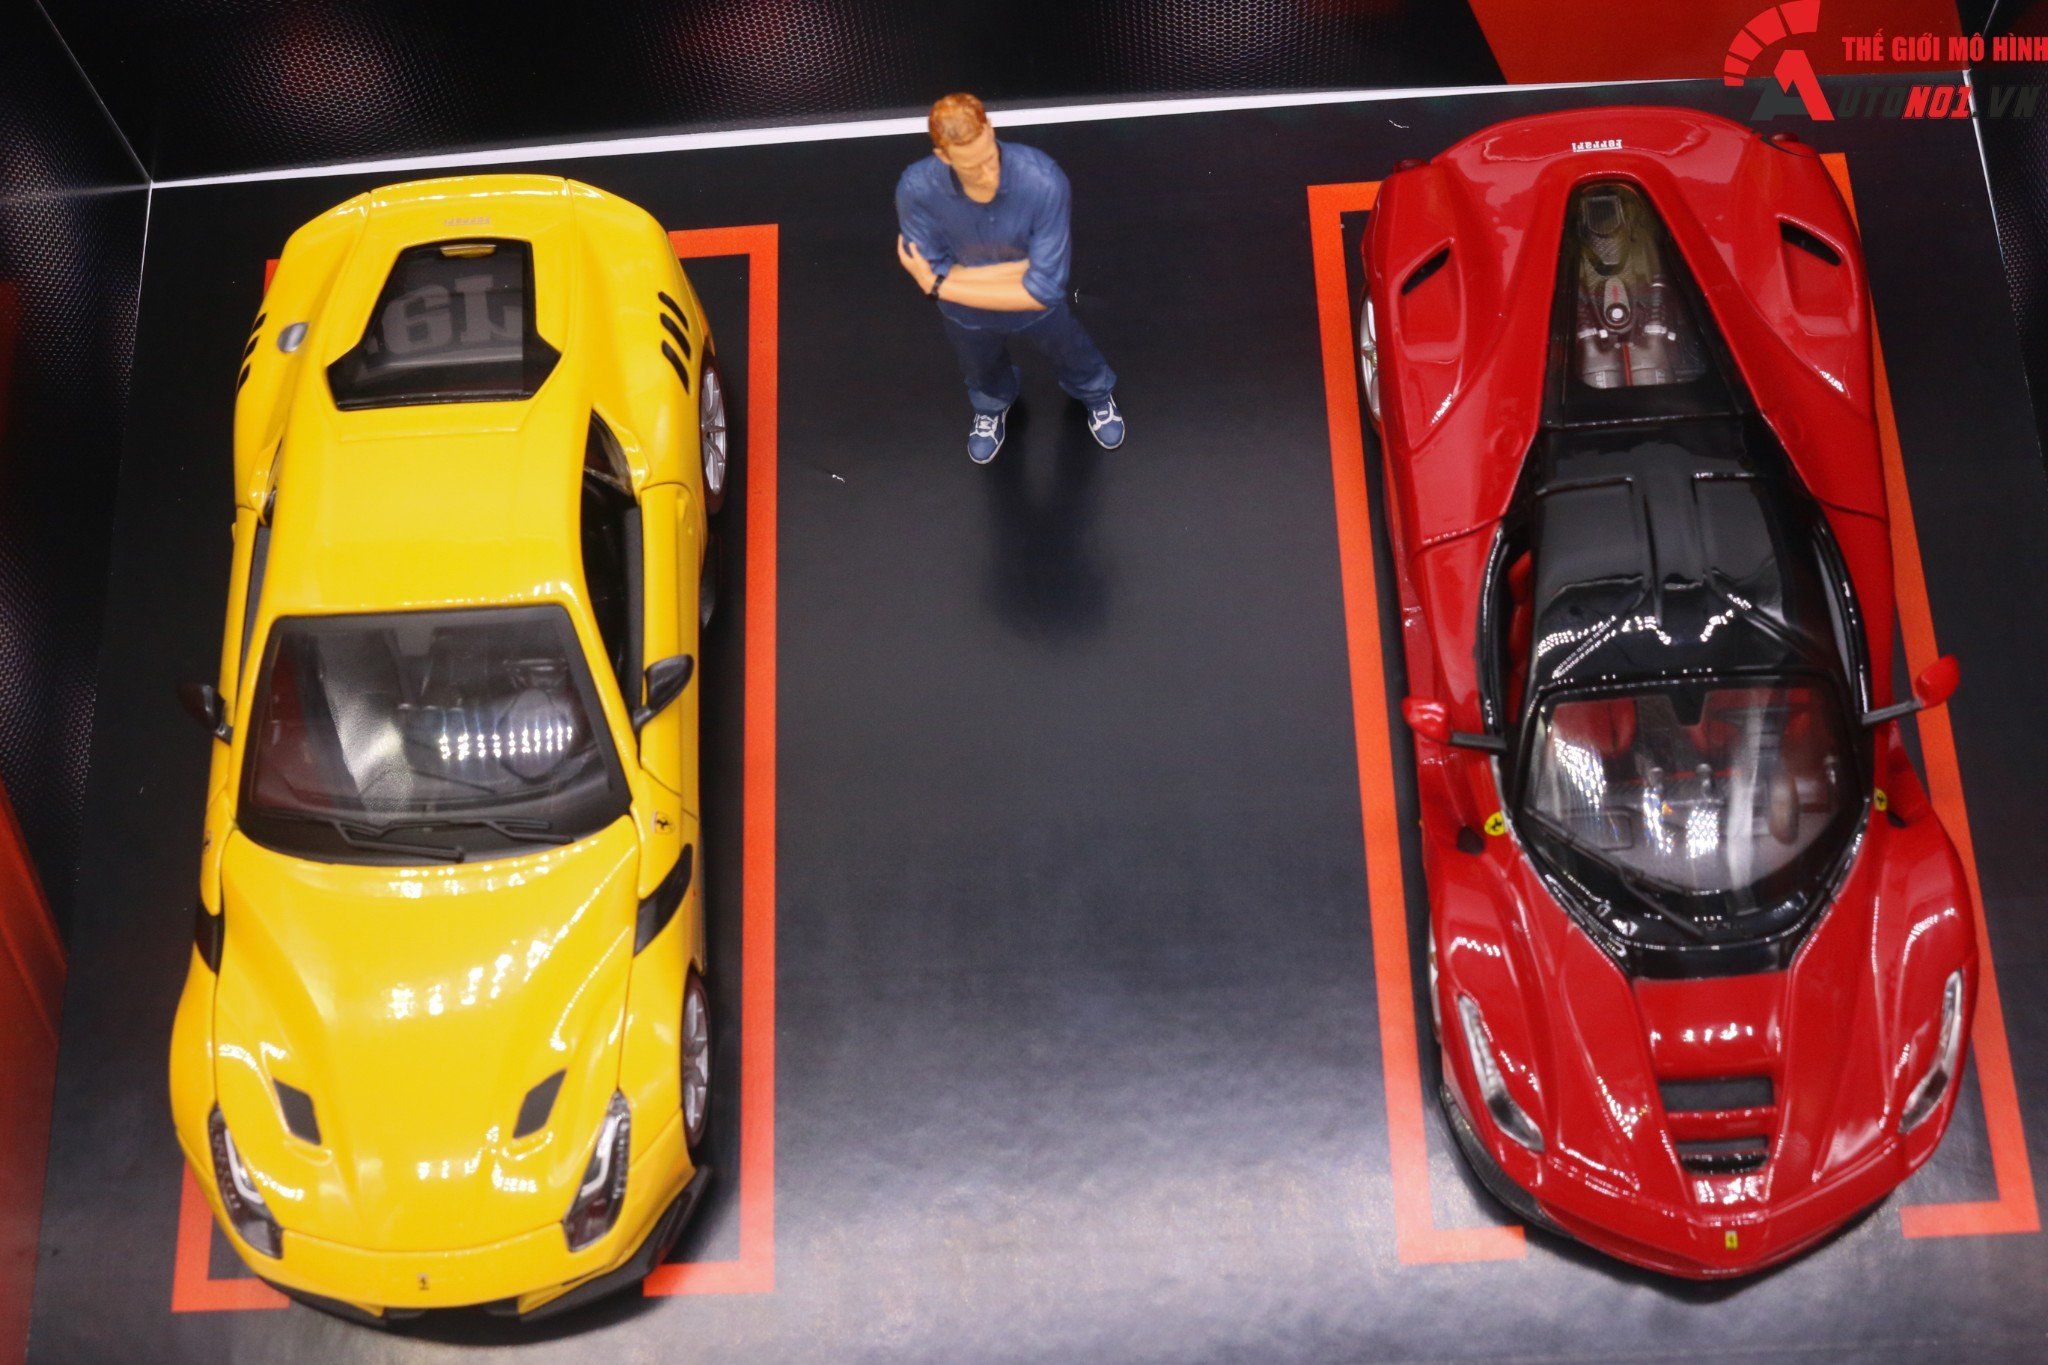  Diorama 1:24 Showroom trưng bày Ferrari cho xe tỉ lệ 1:24 kích thước 35X25X15cm 4 tấm lắp ghép formex 5li DR010A 